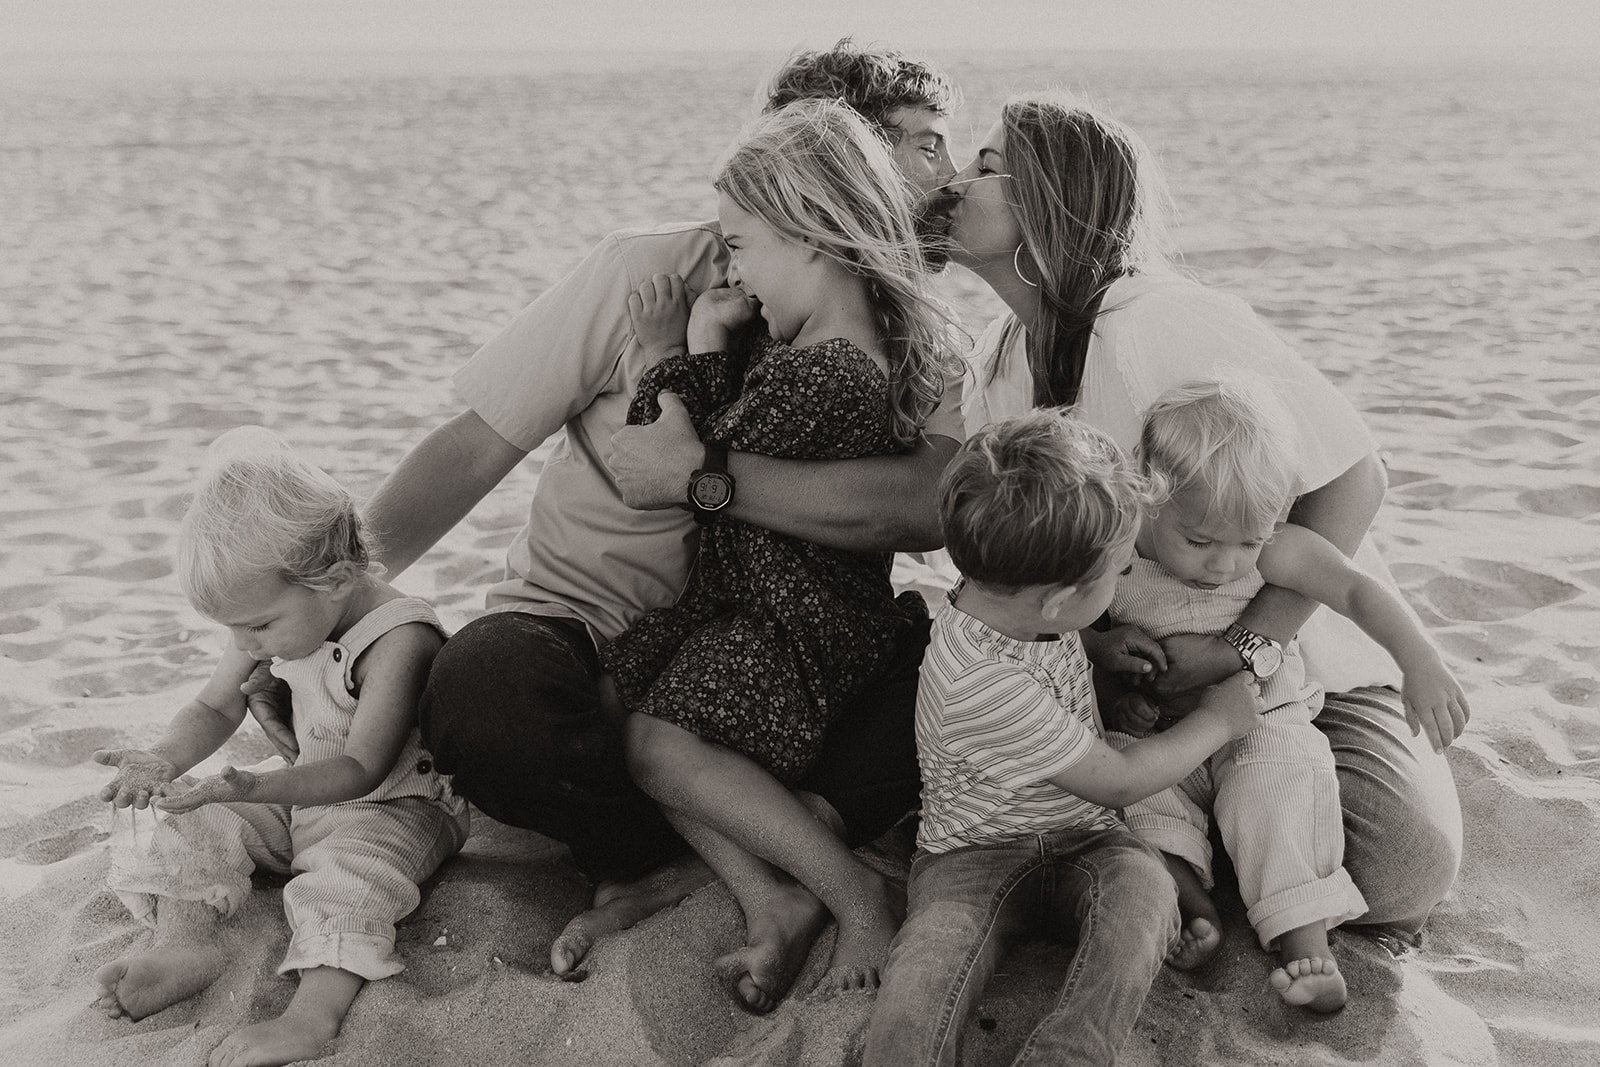 Documentary style family photoshoot on a beach